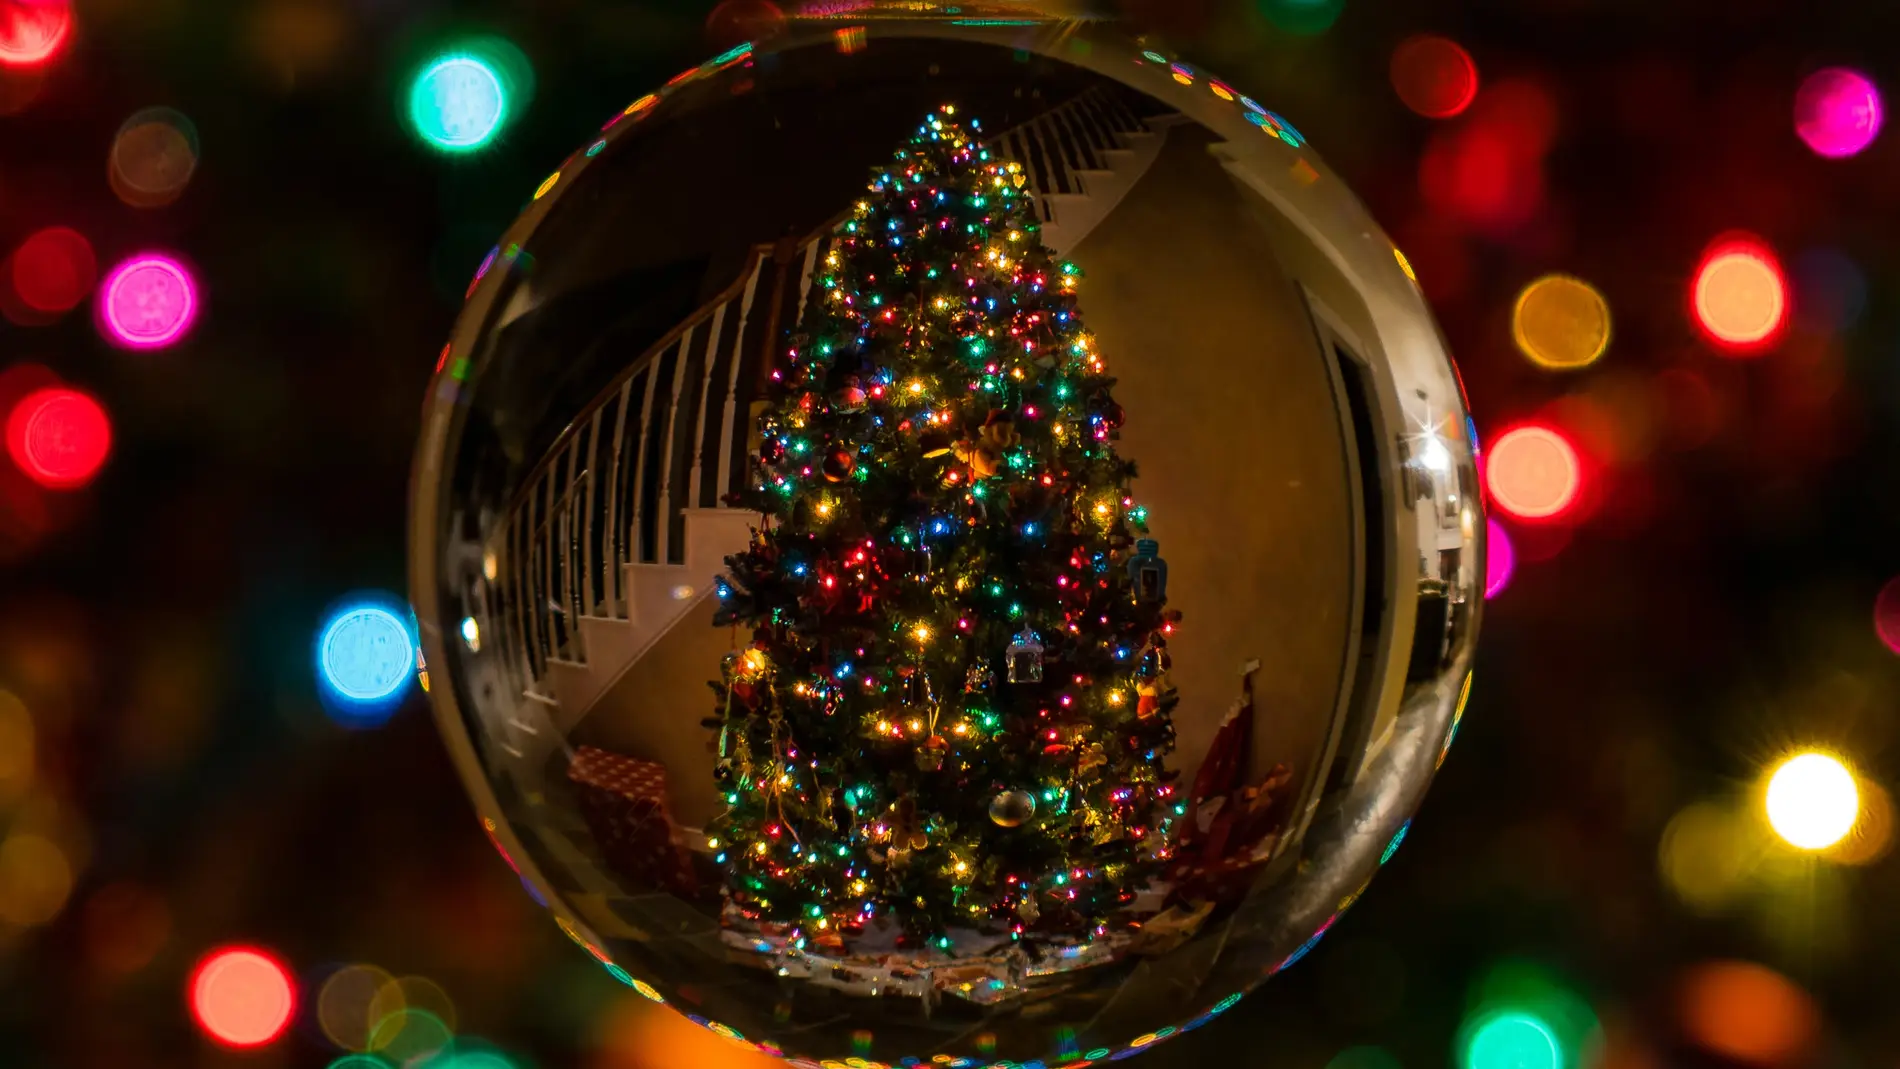 Luces de Navidad | Pexels